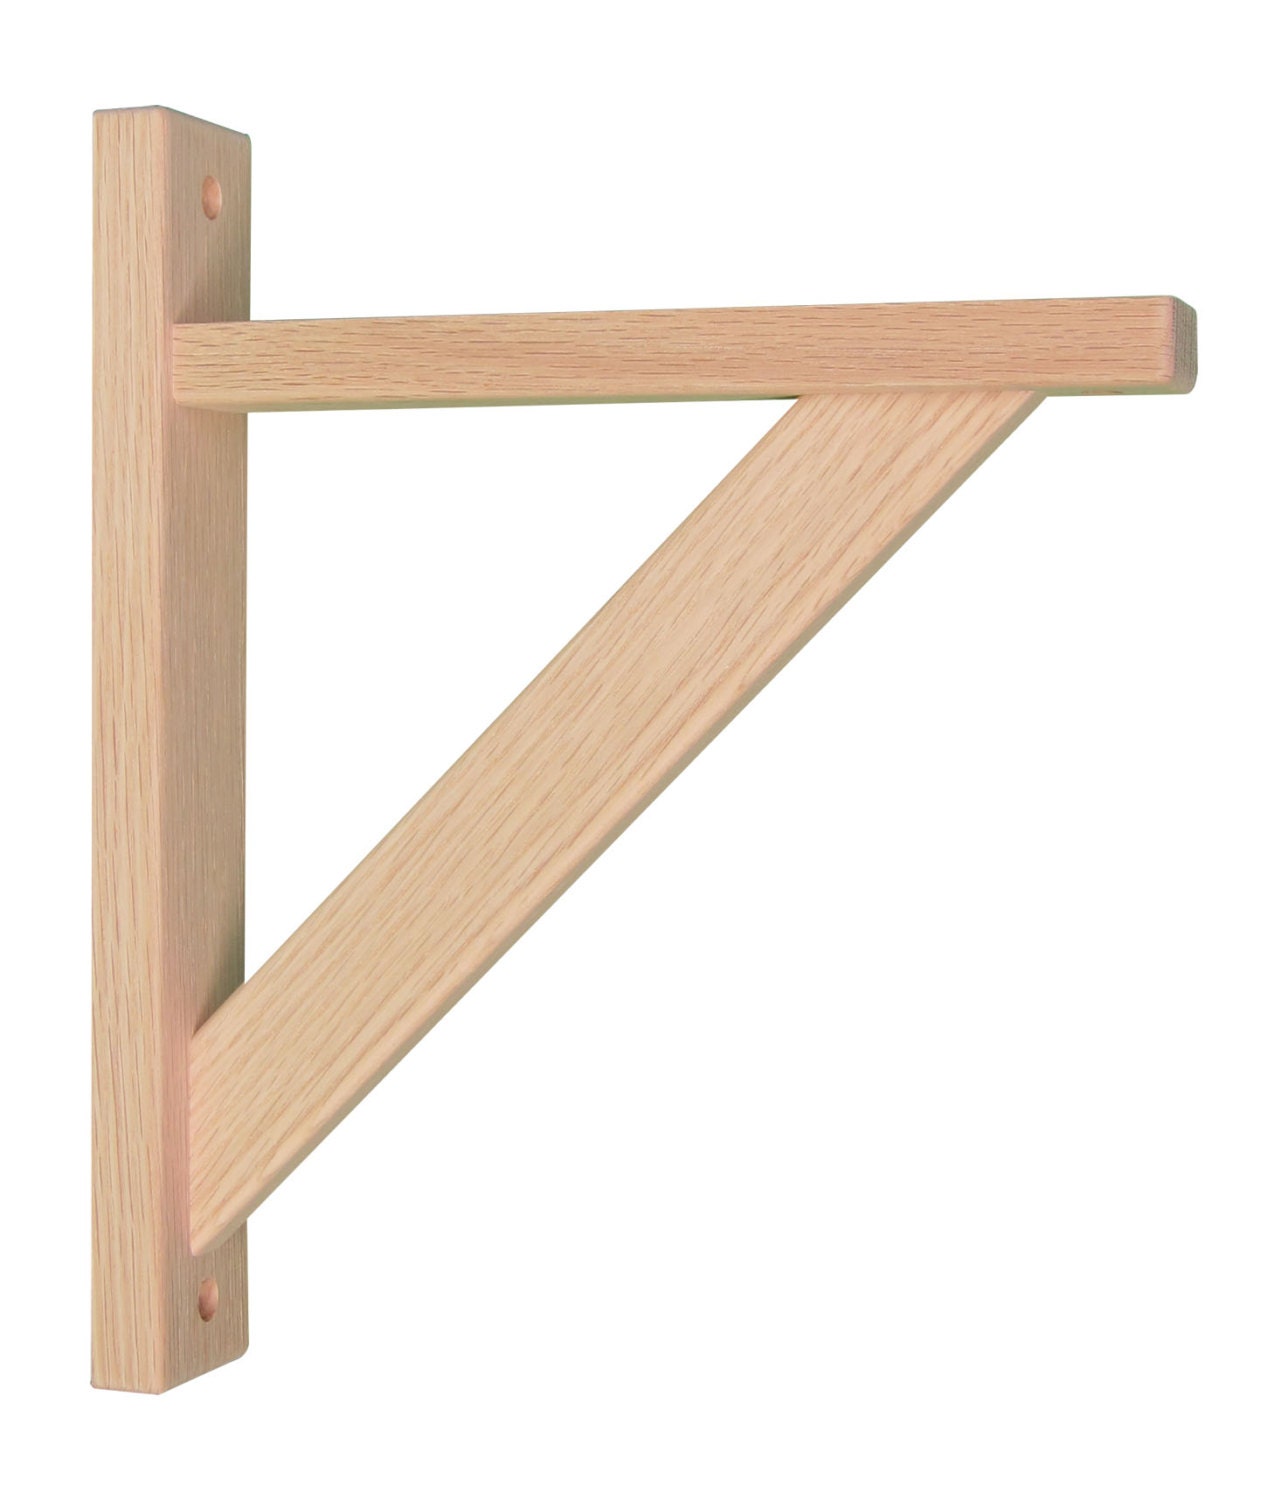 2 x 4 wood shelf brackets